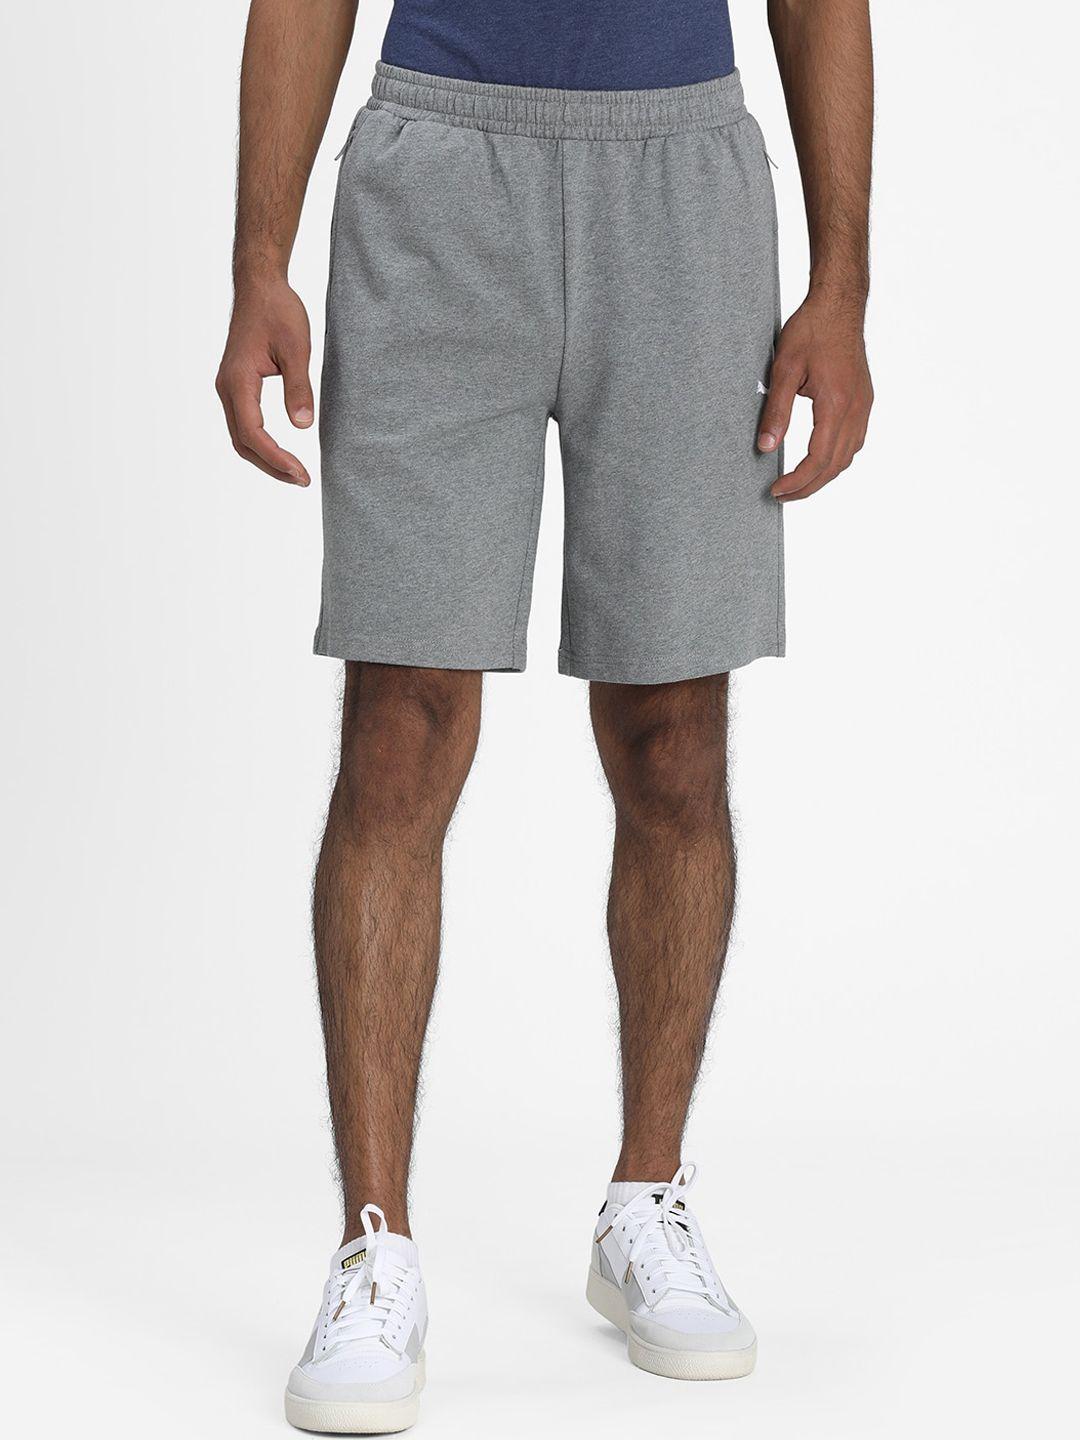 Puma Men Grey Solid Regular Fit Cotton Shorts